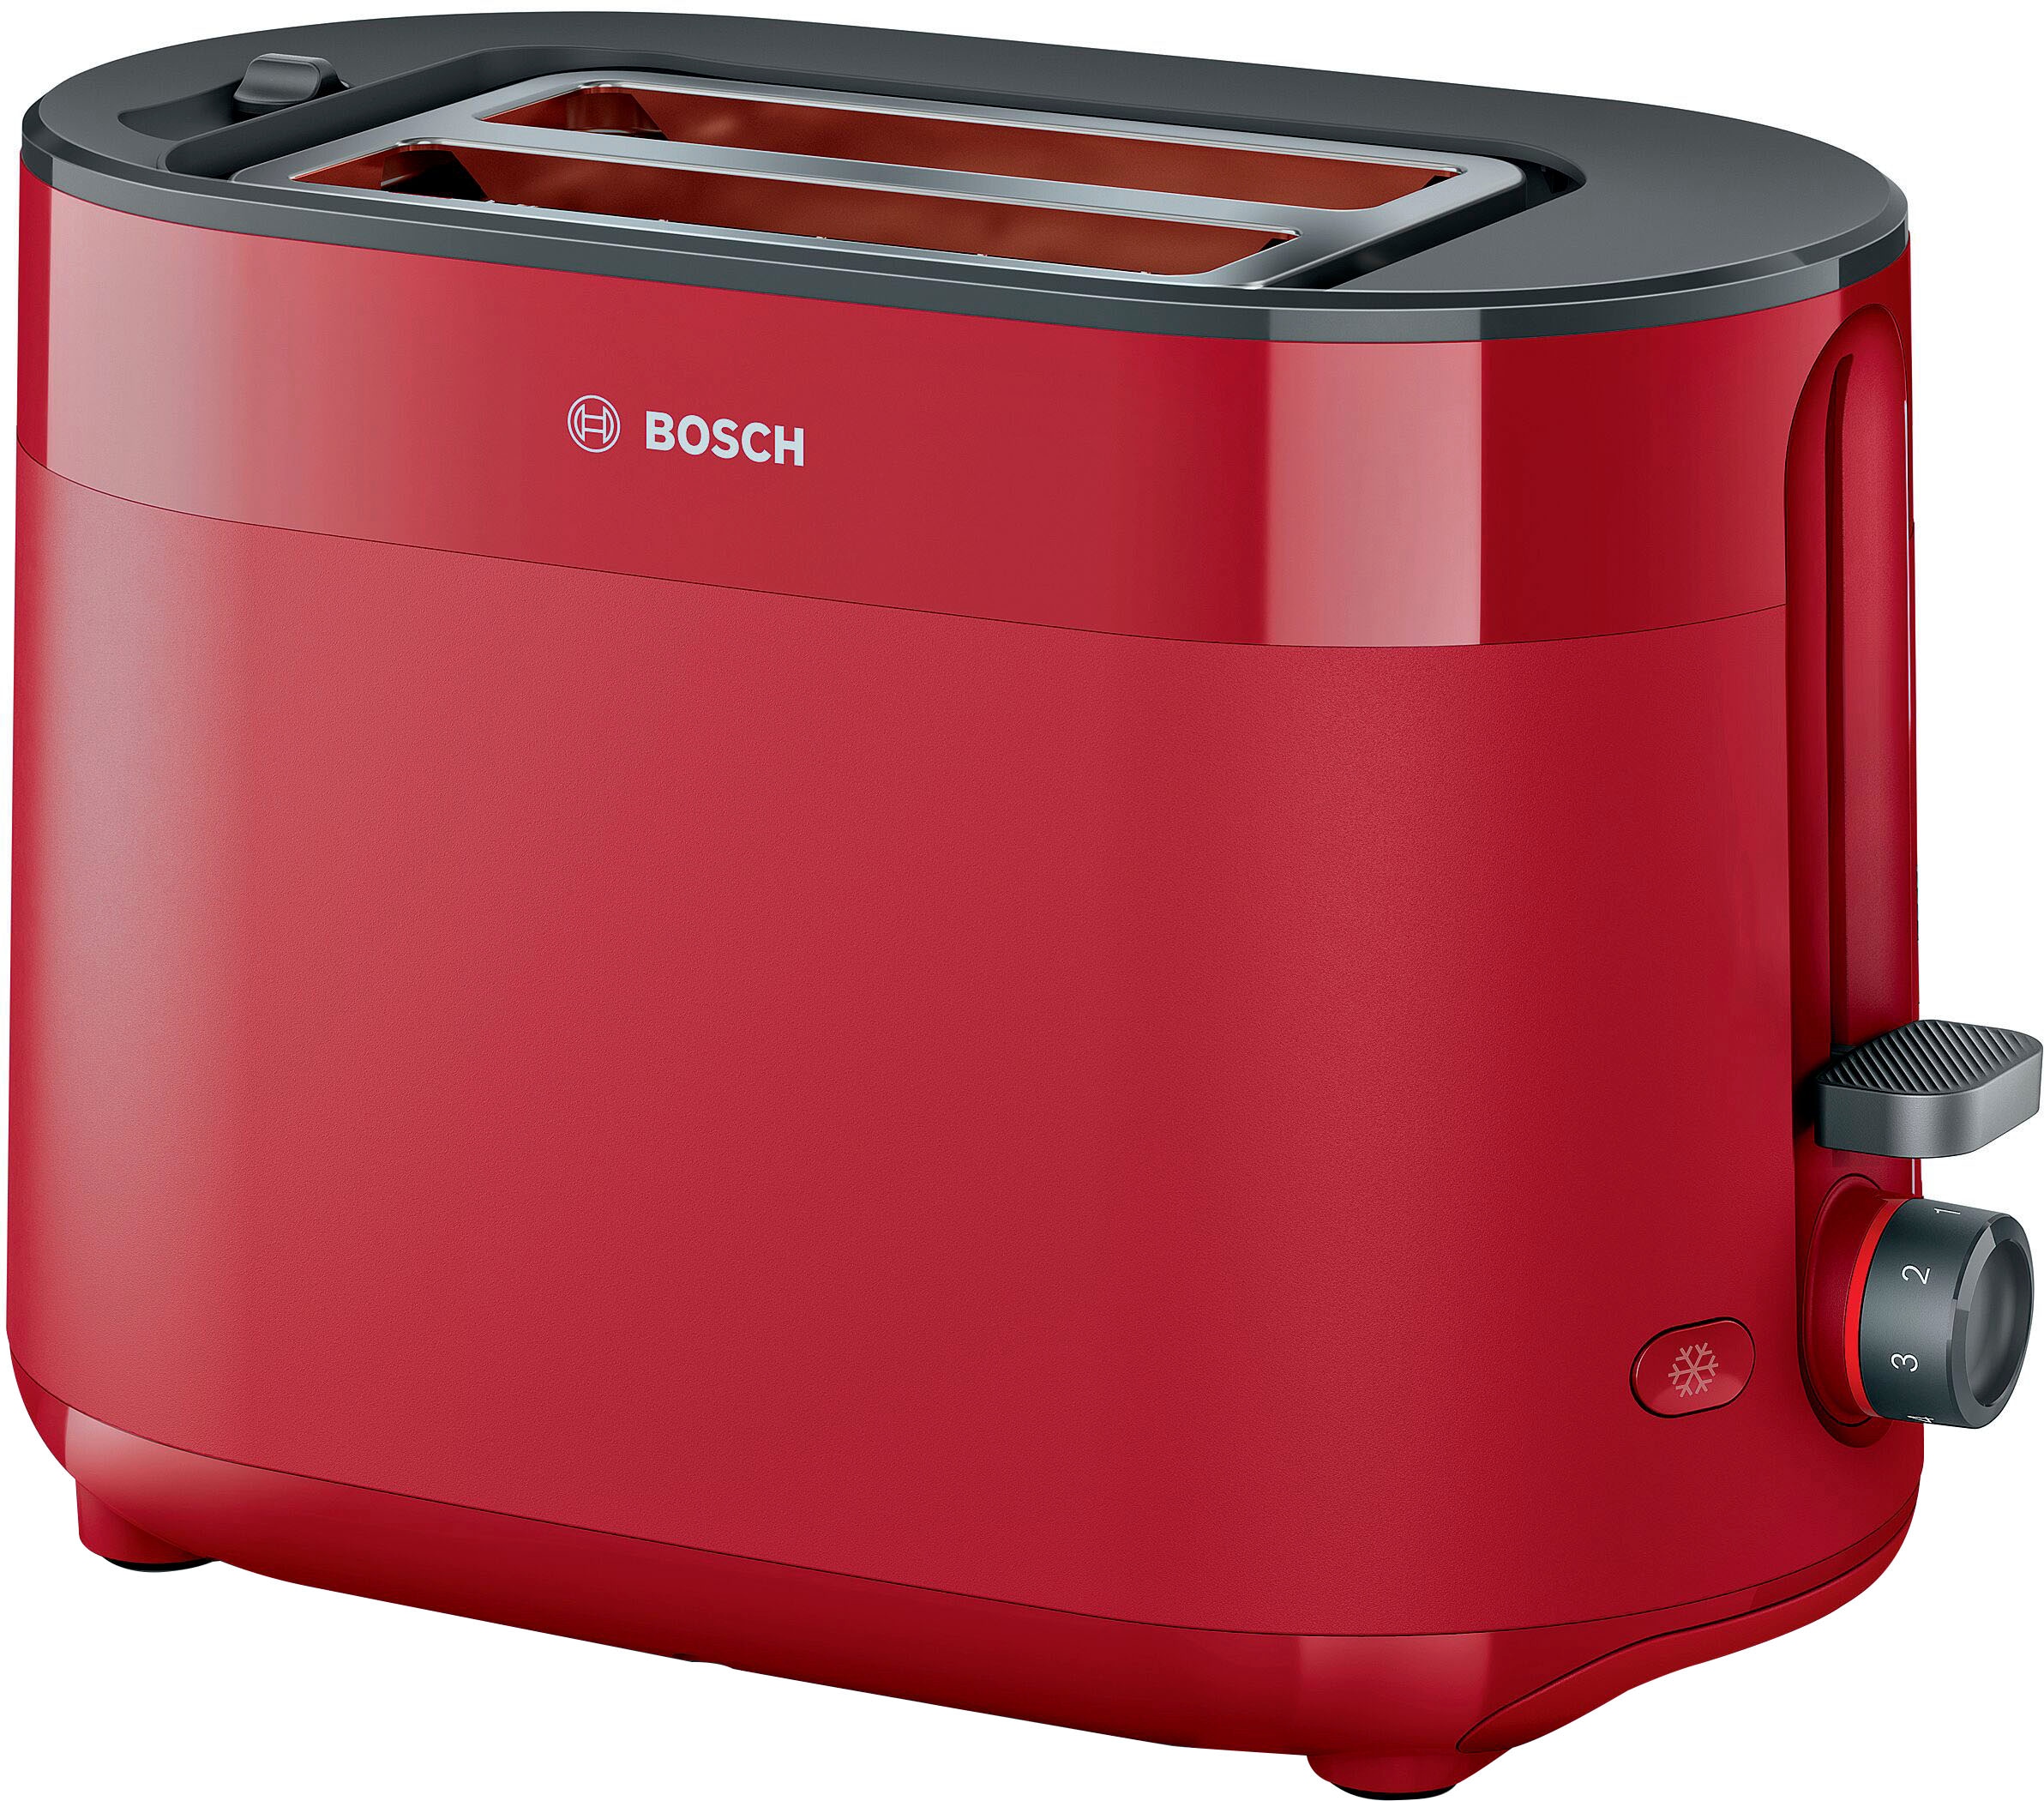 Bosch Toaster jetzt jetzt online kaufen ☆ Universal. Jeder hat sein